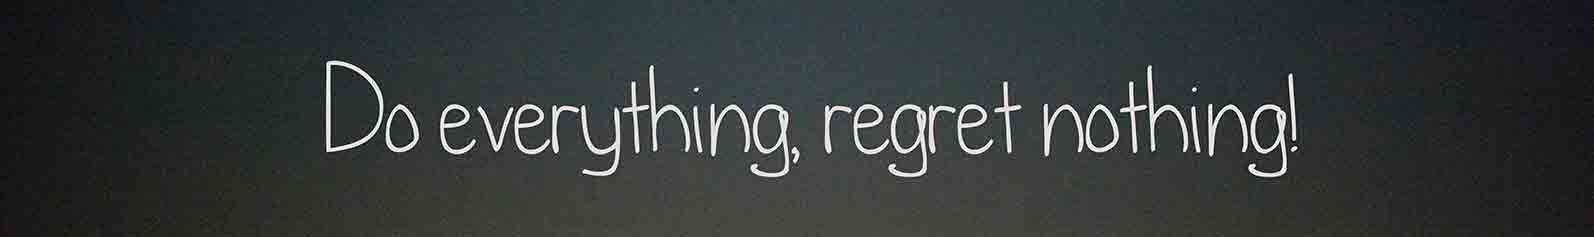 Do Everything Regret nothing